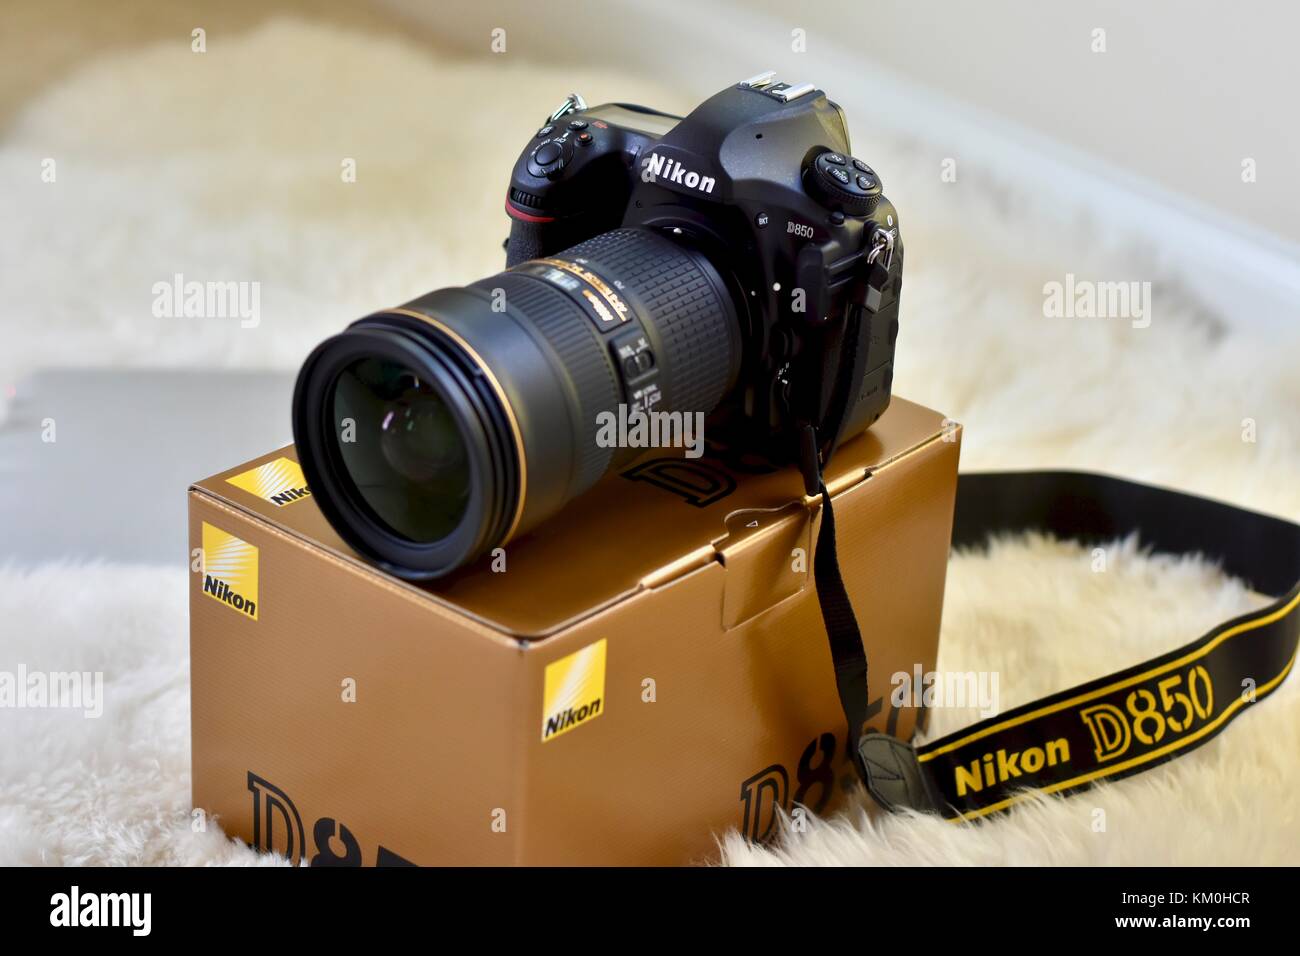 Nikon D850 DSLR-Kamera mit Nikkor 24-70 Objektiv Stockfotografie - Alamy